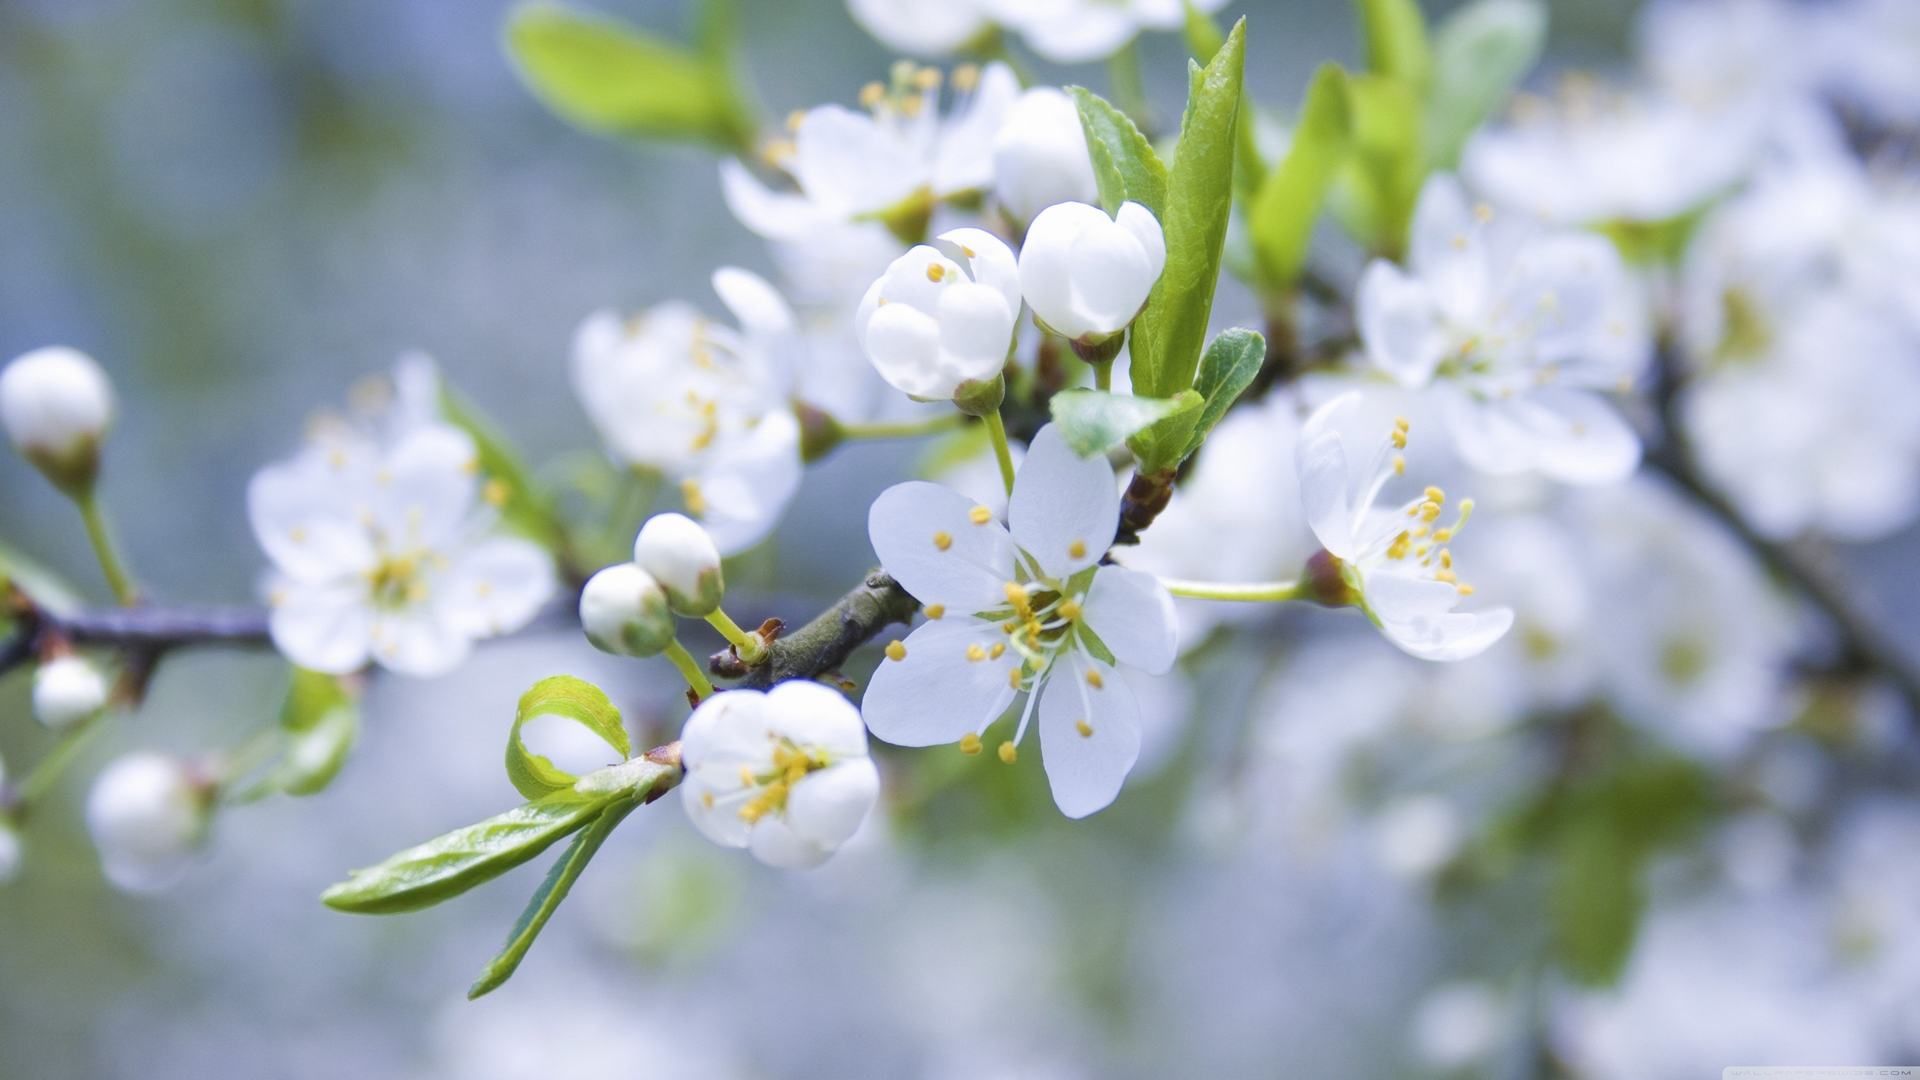 hoa mận | hoa | Pinterest | White flowers and Flowers